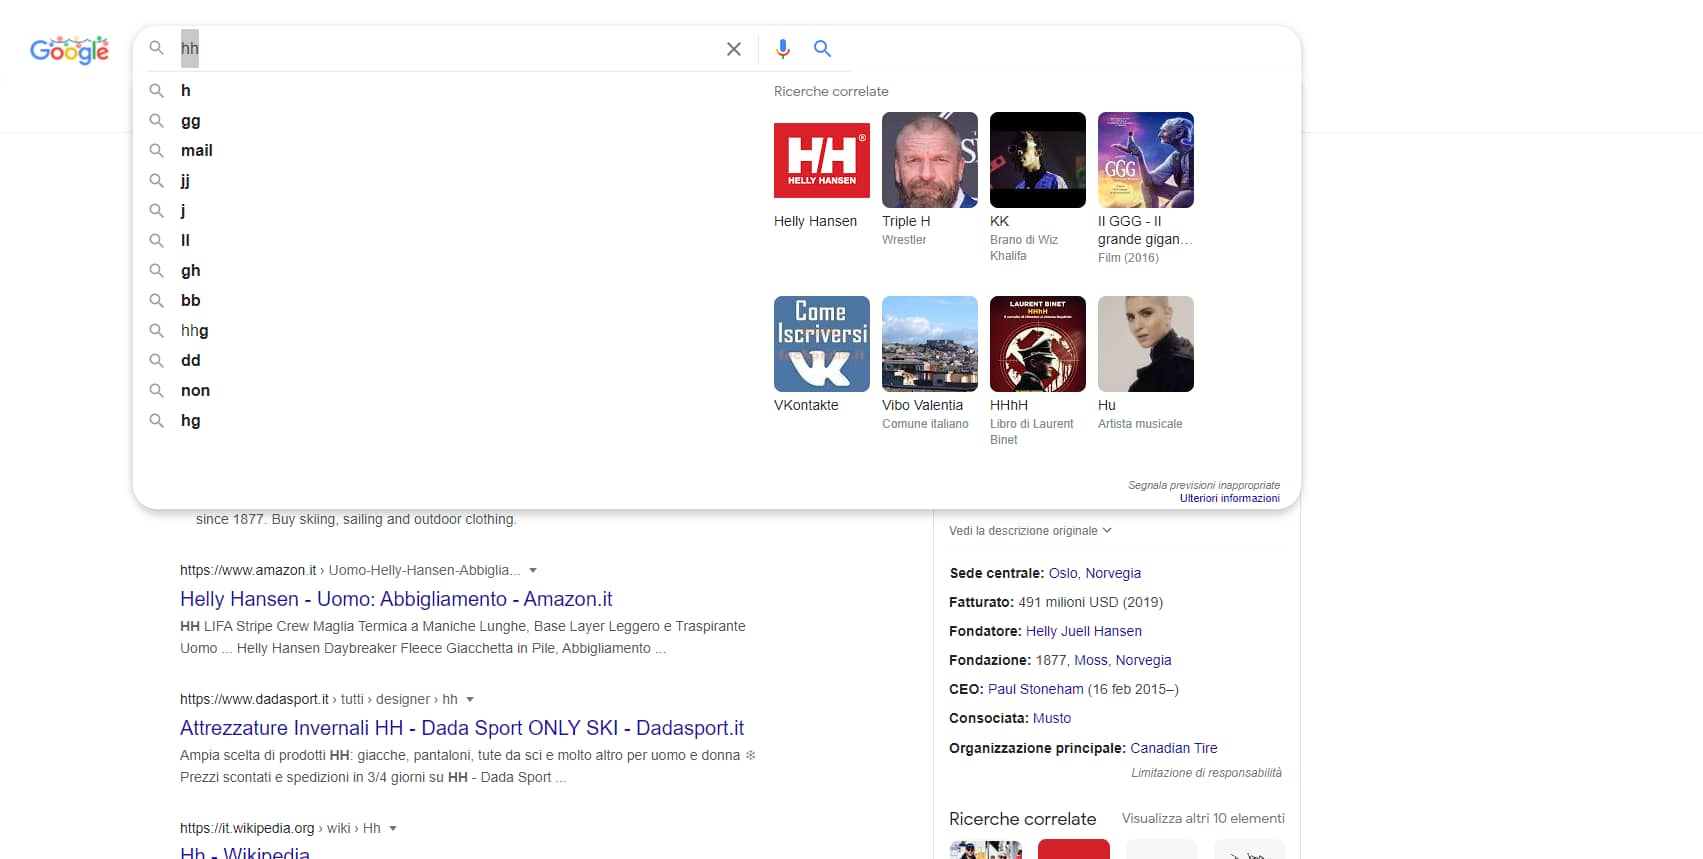 Nuova interfaccia di Google Search (ancora in test) - immagine 3